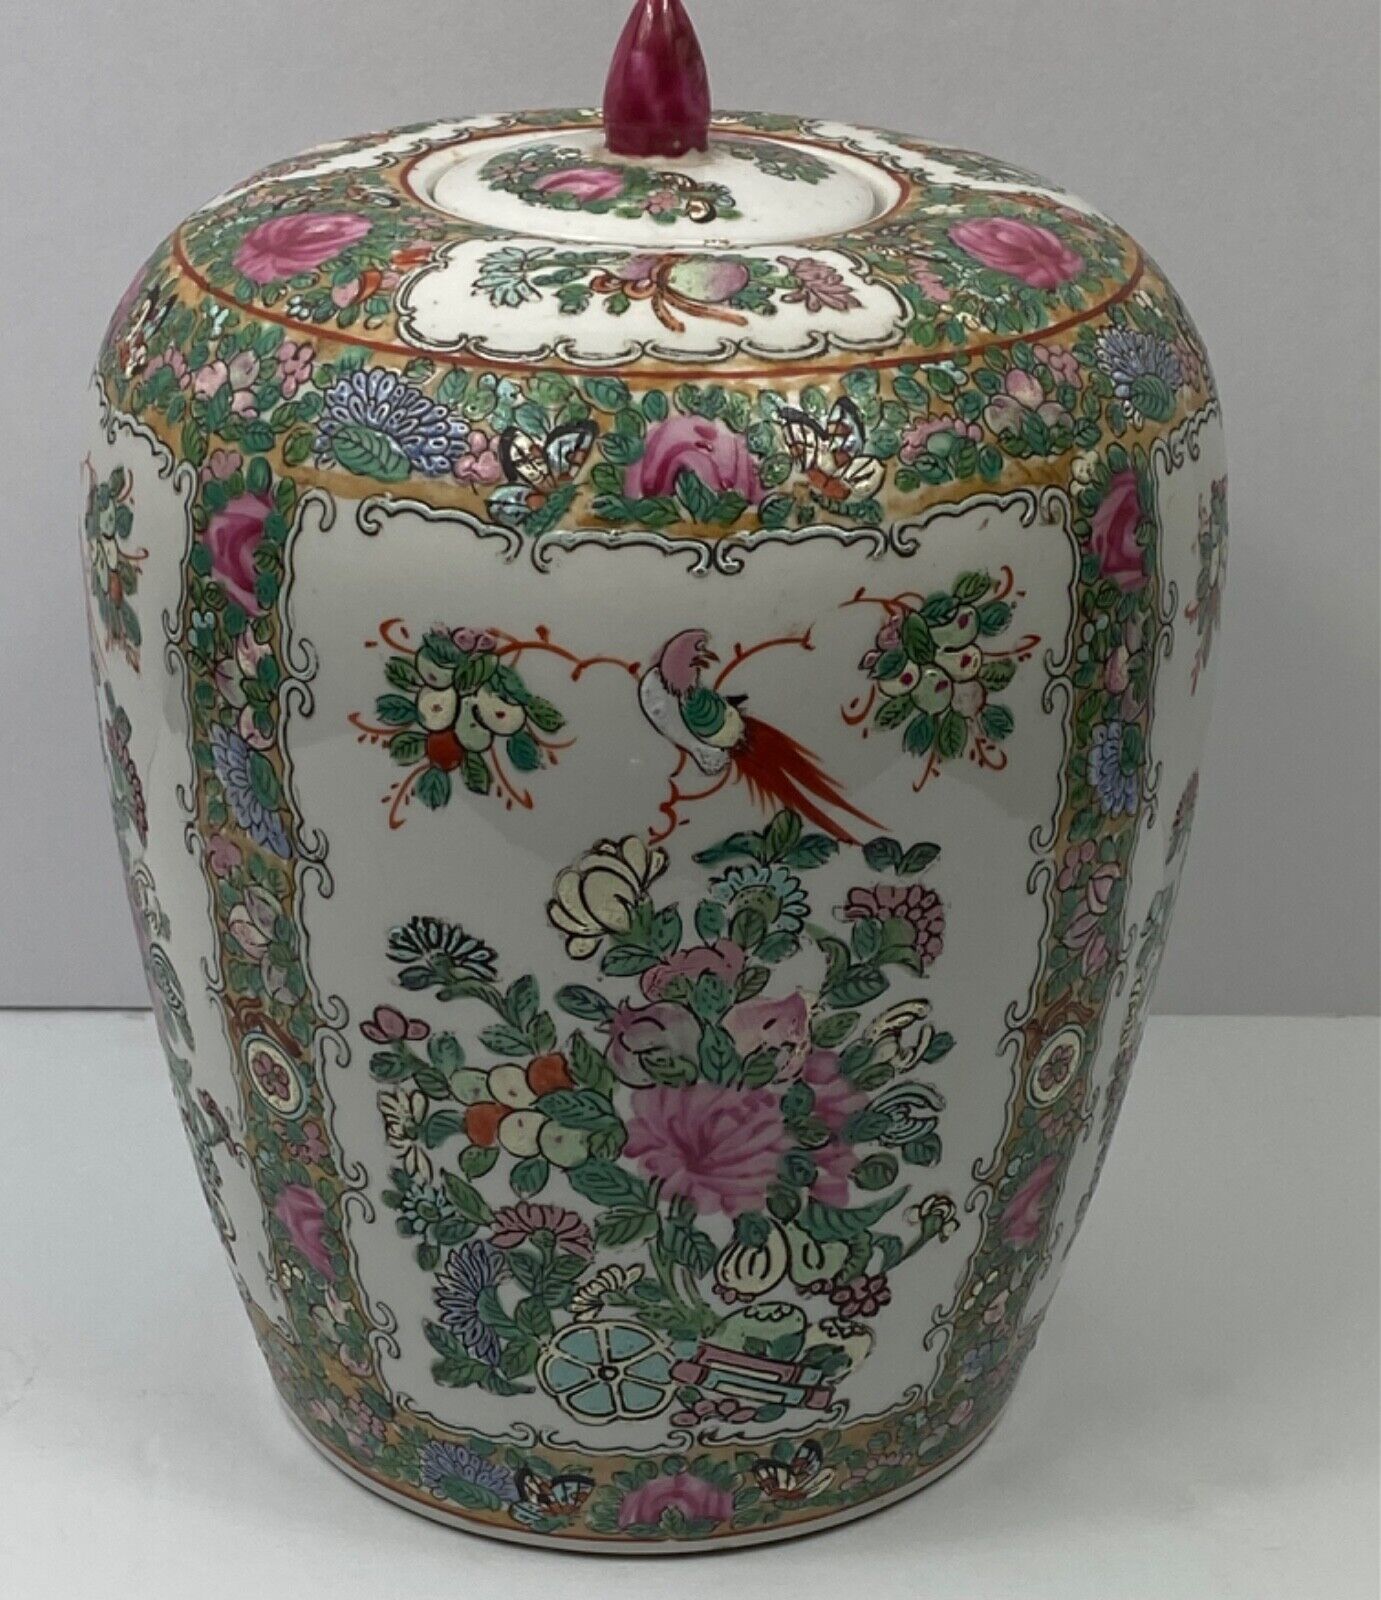 Chinese Famille Rose Porcelain Ginger Jars w/ Floral & Bird Dec.